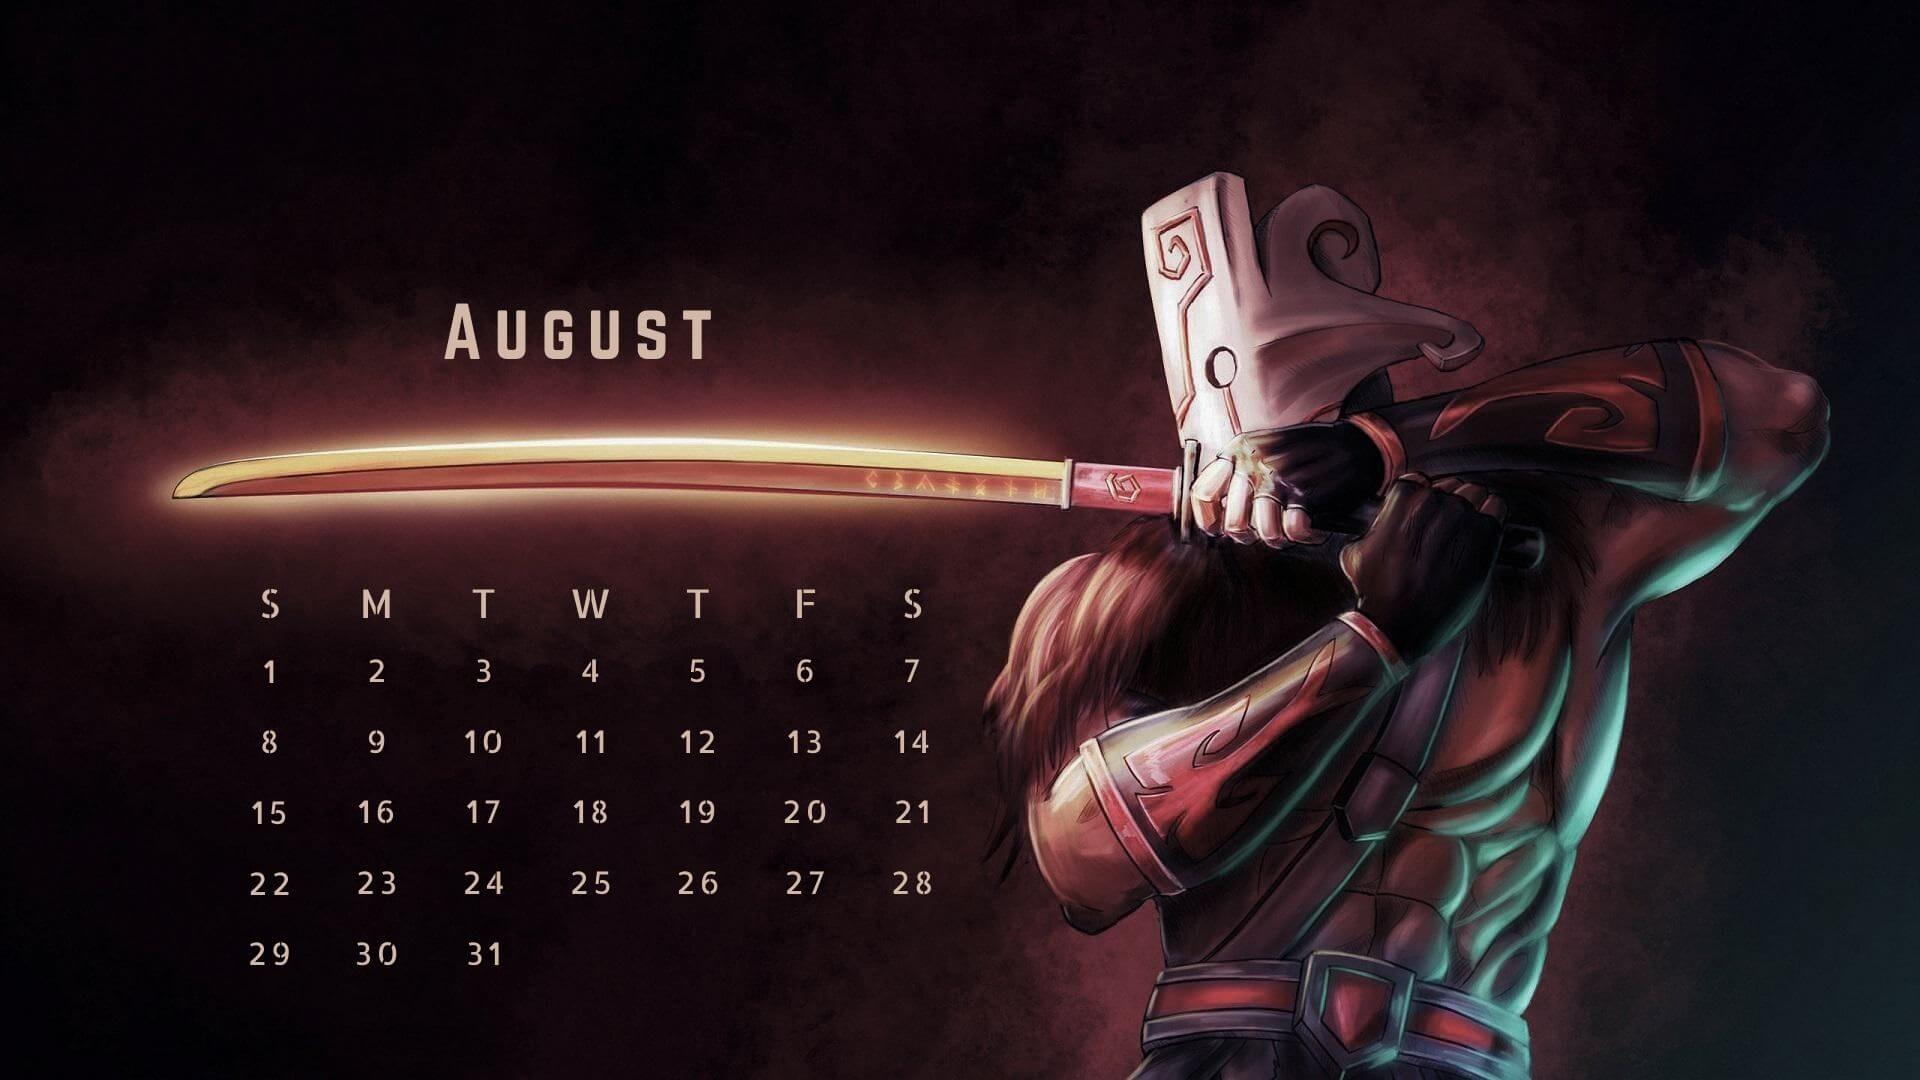 August 2021 Calendar Wallpaper for Desktop